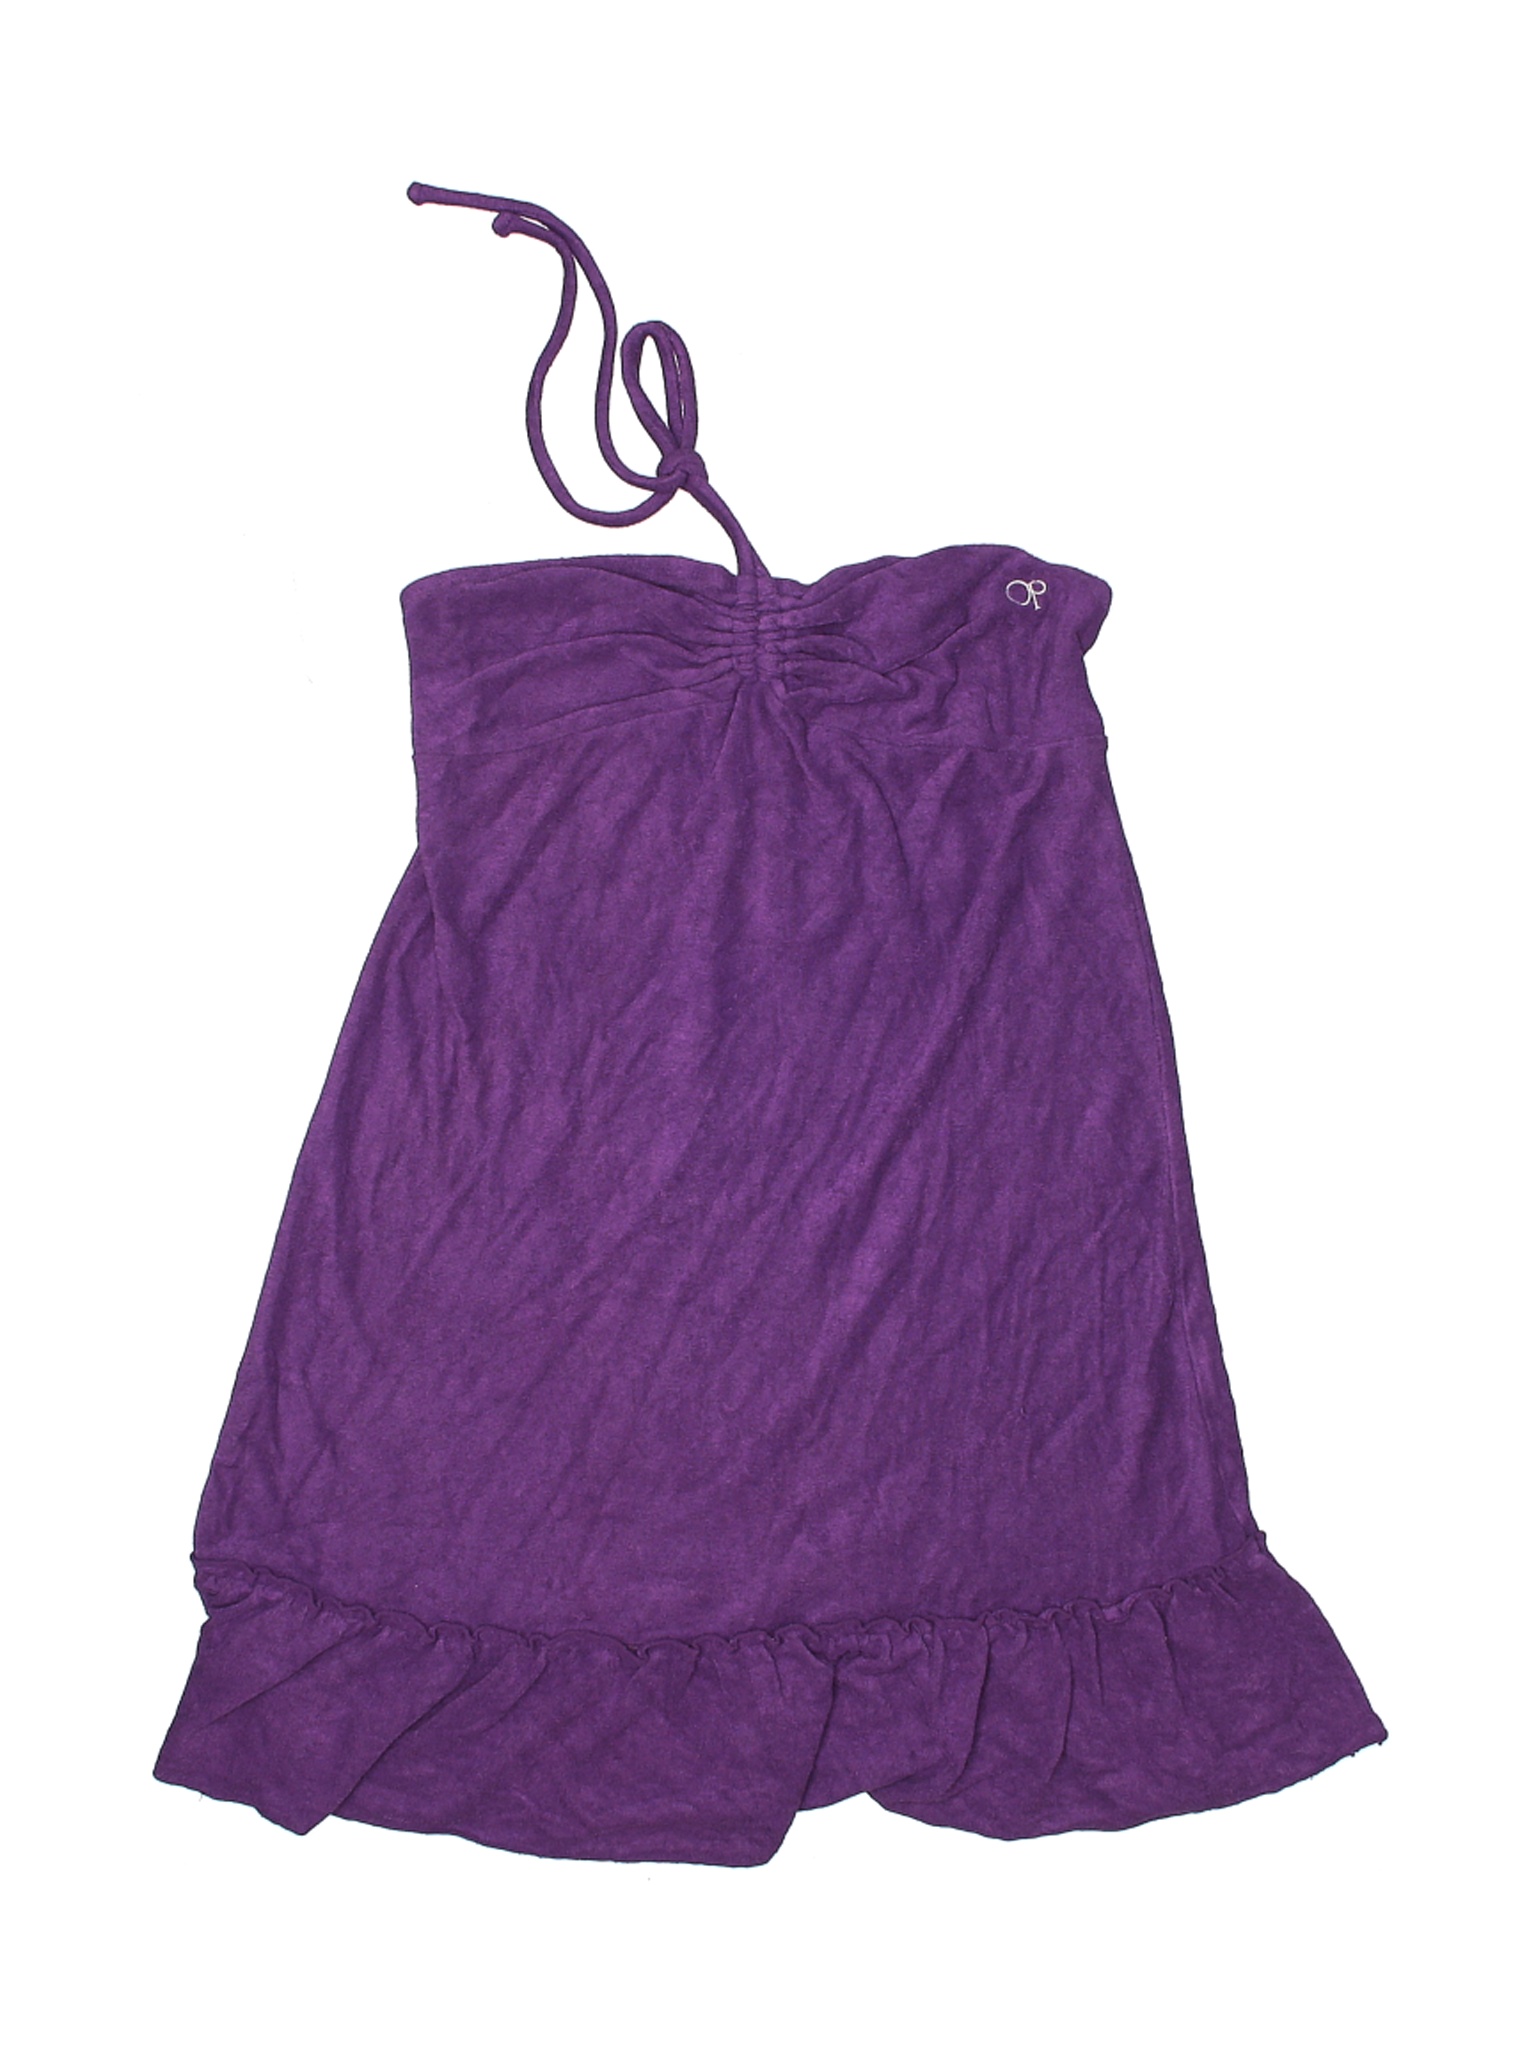 Op Women Purple Swimsuit Cover Up M | eBay